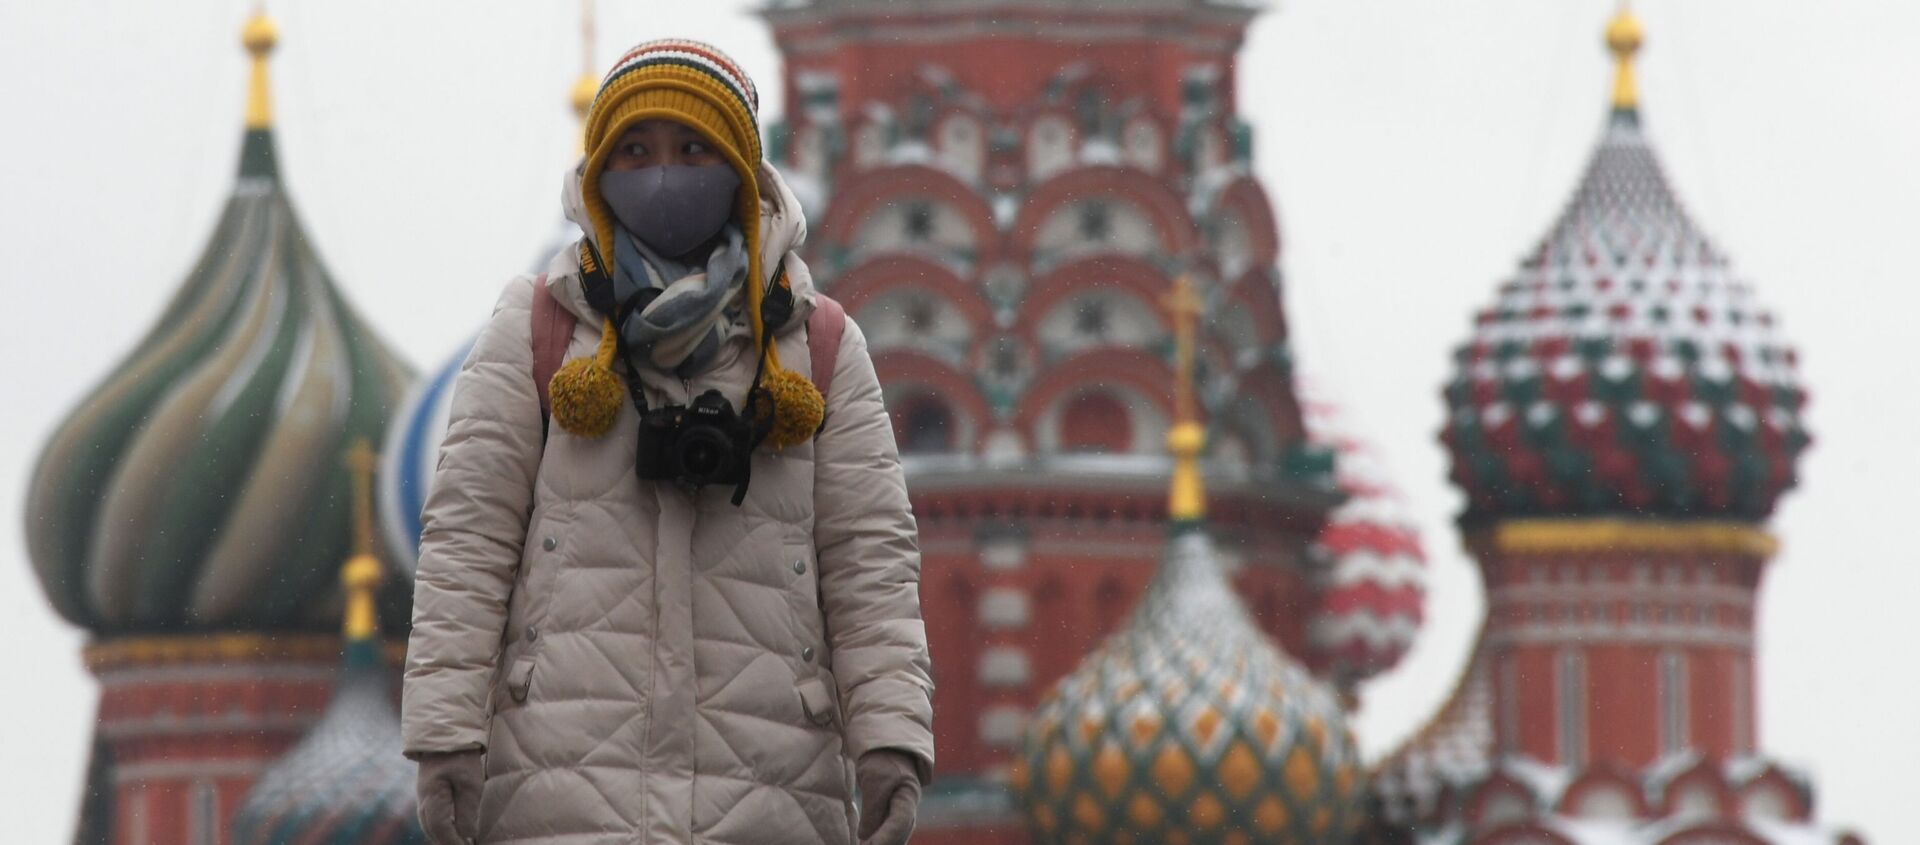 Иностранная туристка в защитной маске на Красной площади в Москве - Sputnik Латвия, 1920, 01.01.2021